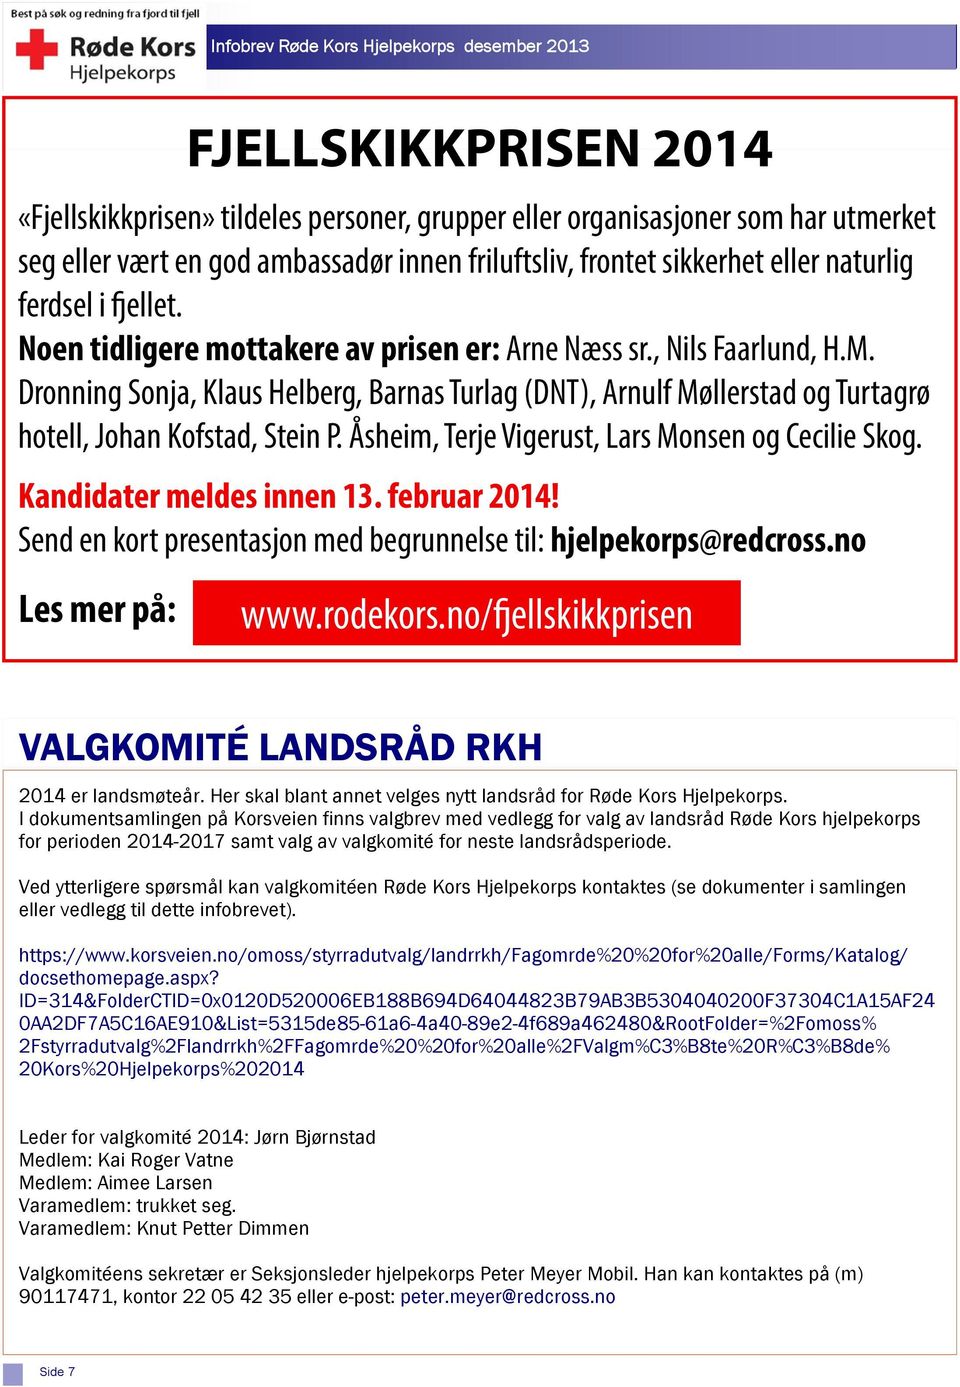 Åsheim, Terje Vigerust, Lars Monsen og Cecilie Skog. Kandidater meldes innen 13. februar 2014! Send en kort presentasjon med begrunnelse til: hjelpekorps@redcross.no Les mer på: www.rodekors.